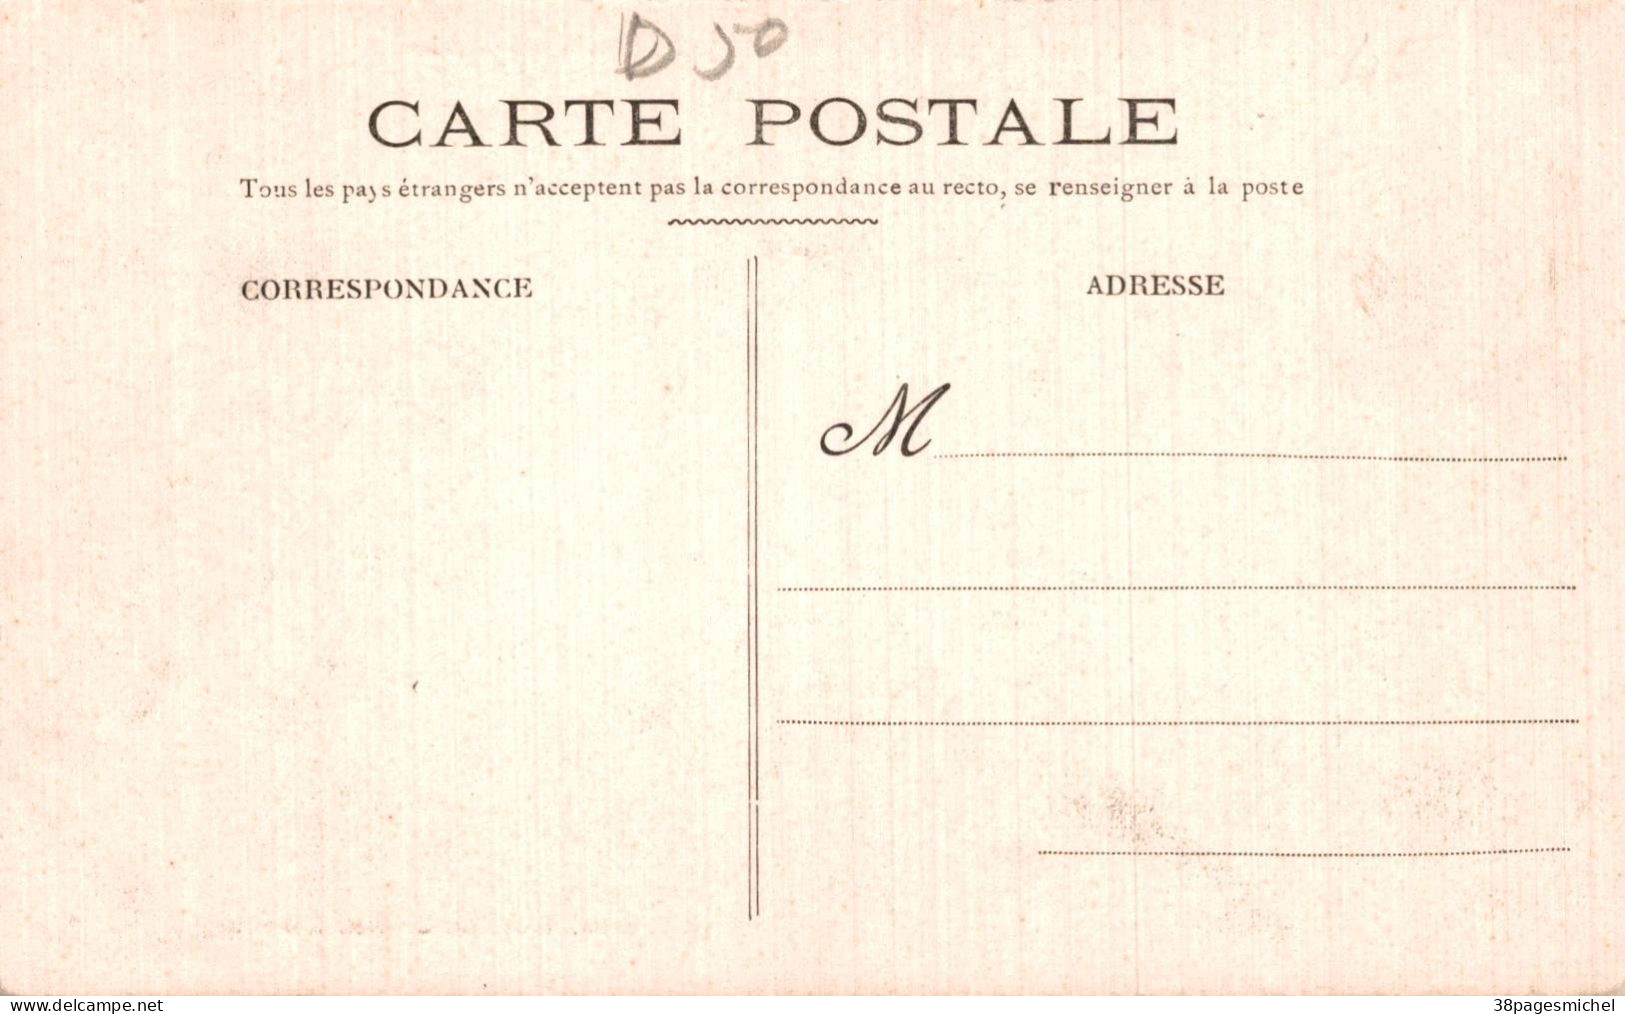 K1905 - CHERBOURG - D50 - Lot de 5 Cartes Postales